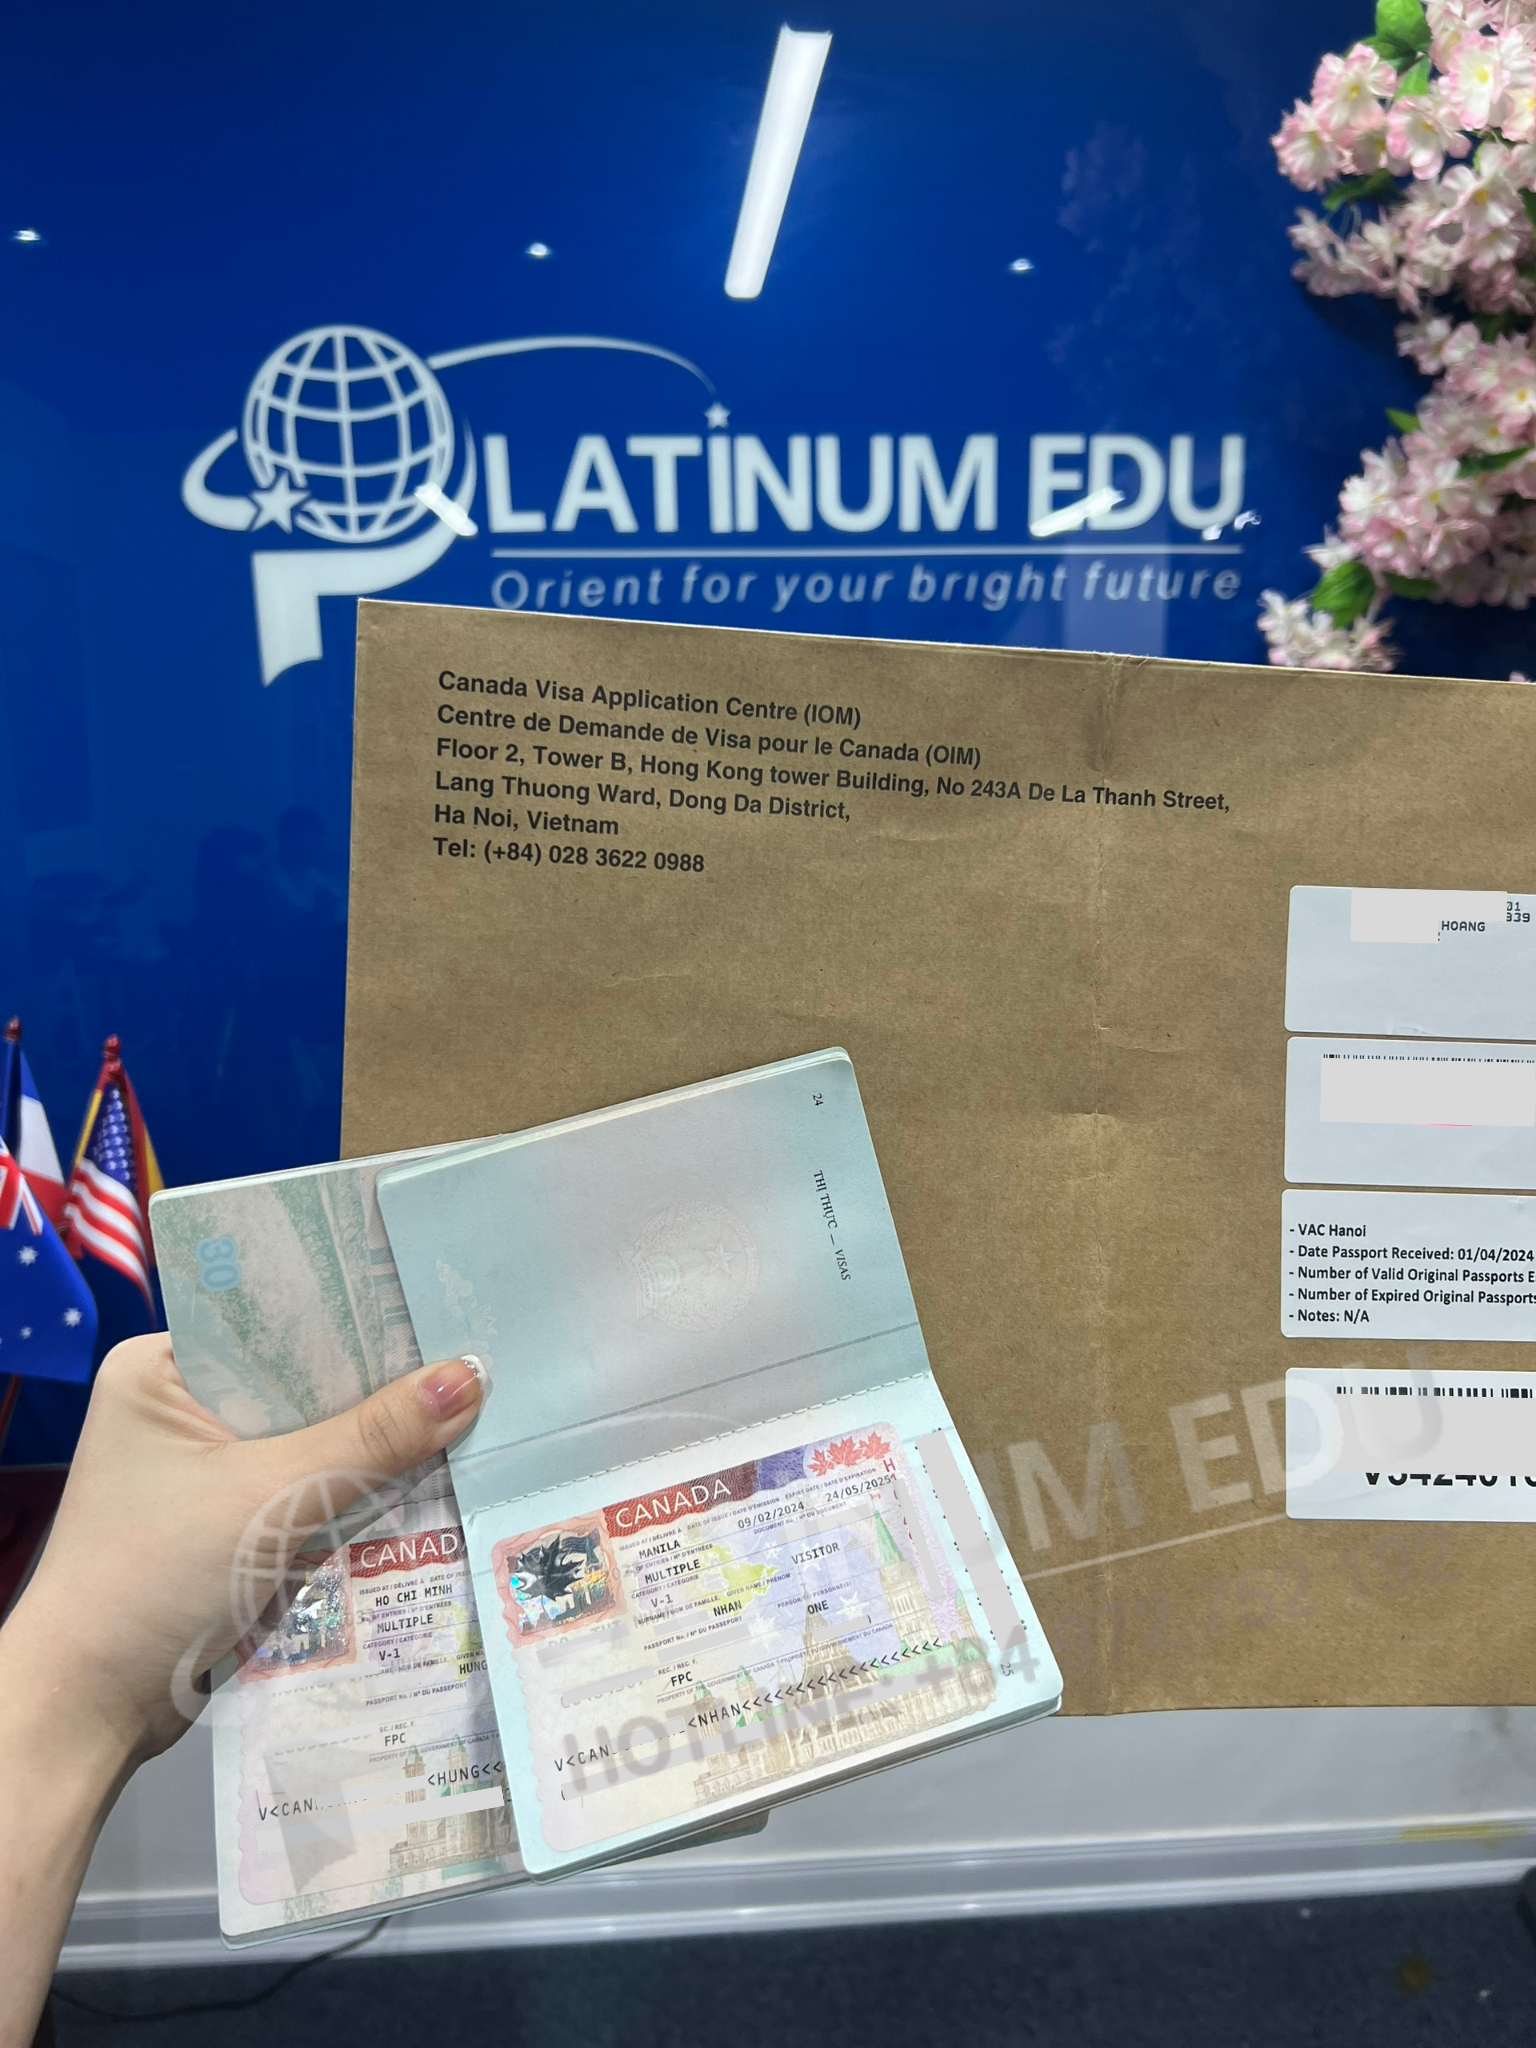 Platinum Edu xử lý thành công Visa Canada Dài hạn cho Anh H - Chị N